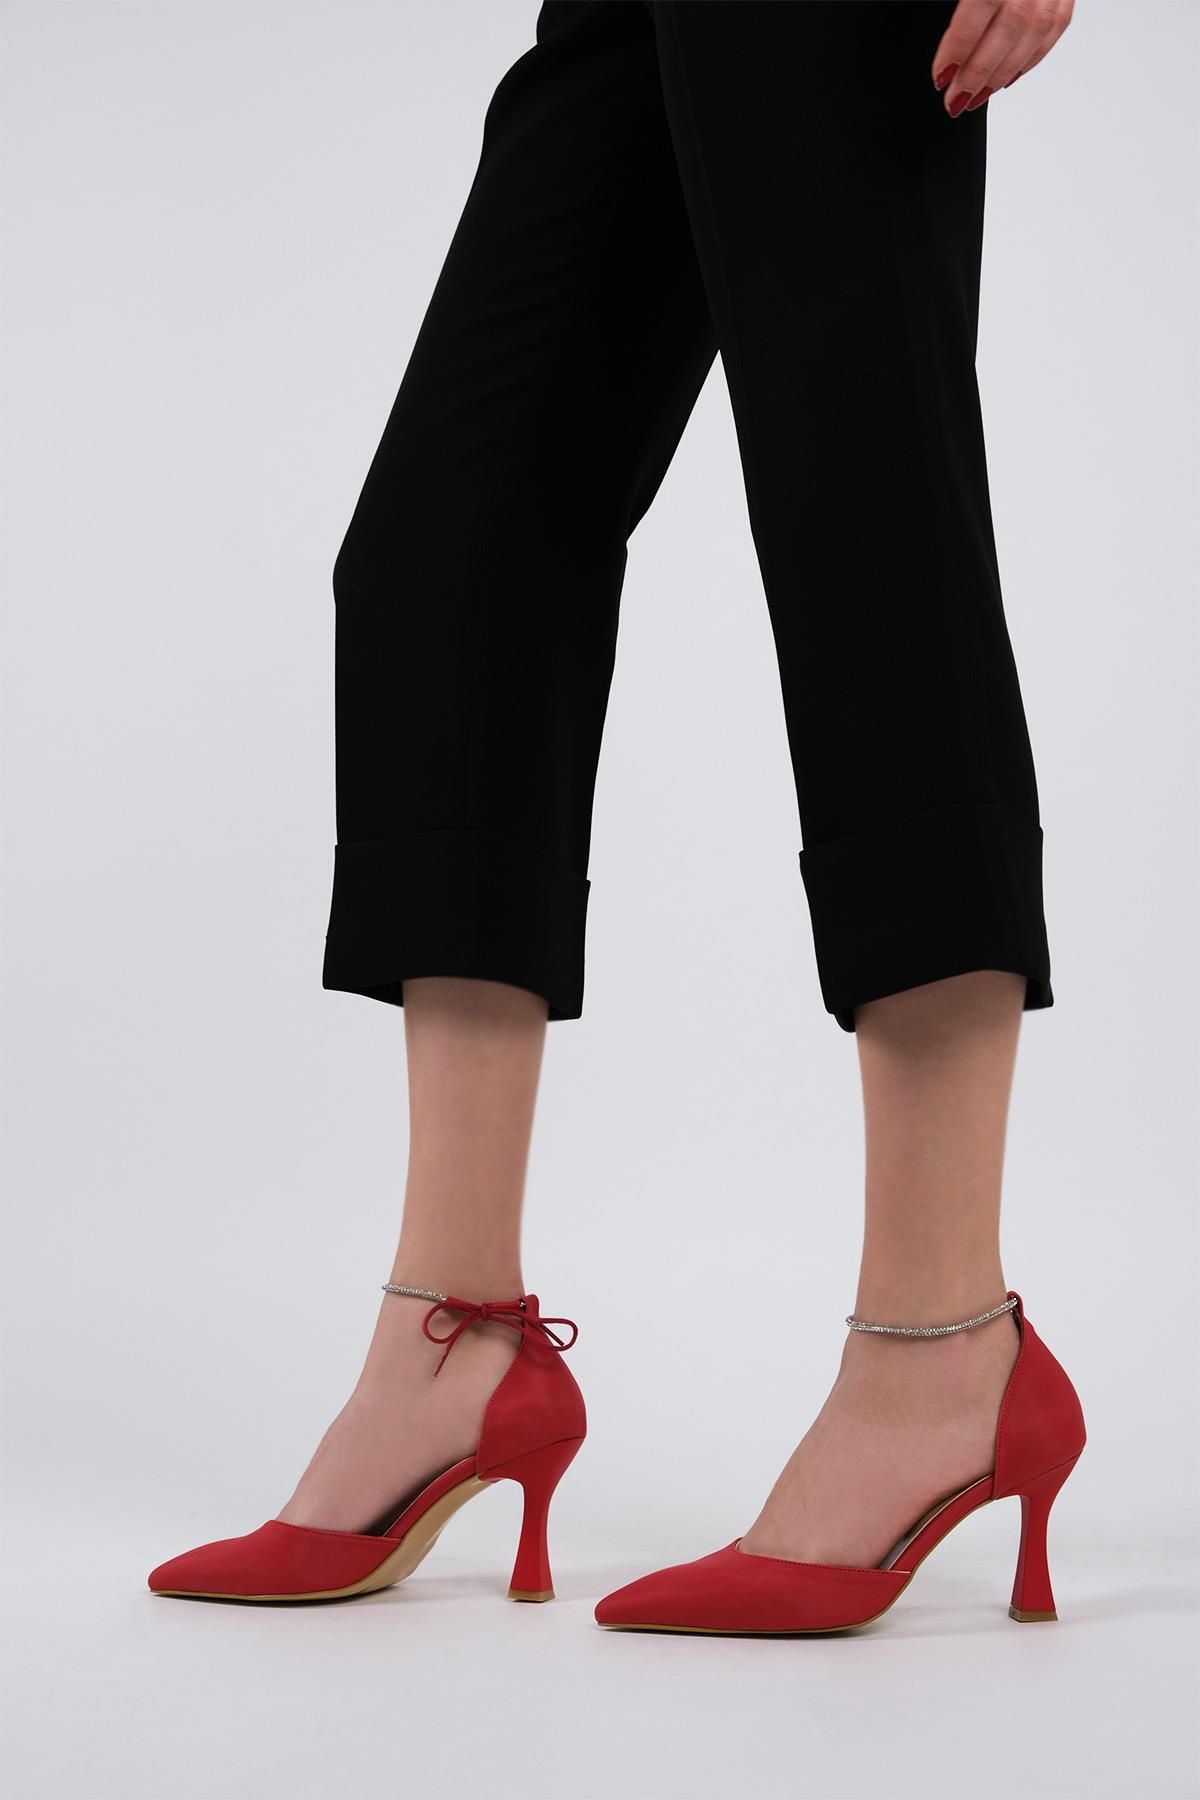 Modabuymus Kırmızı Saten Bilekten Bağlamalı Taşlı Stiletto Kadeh Topuklu Ayakkabı - Glossy